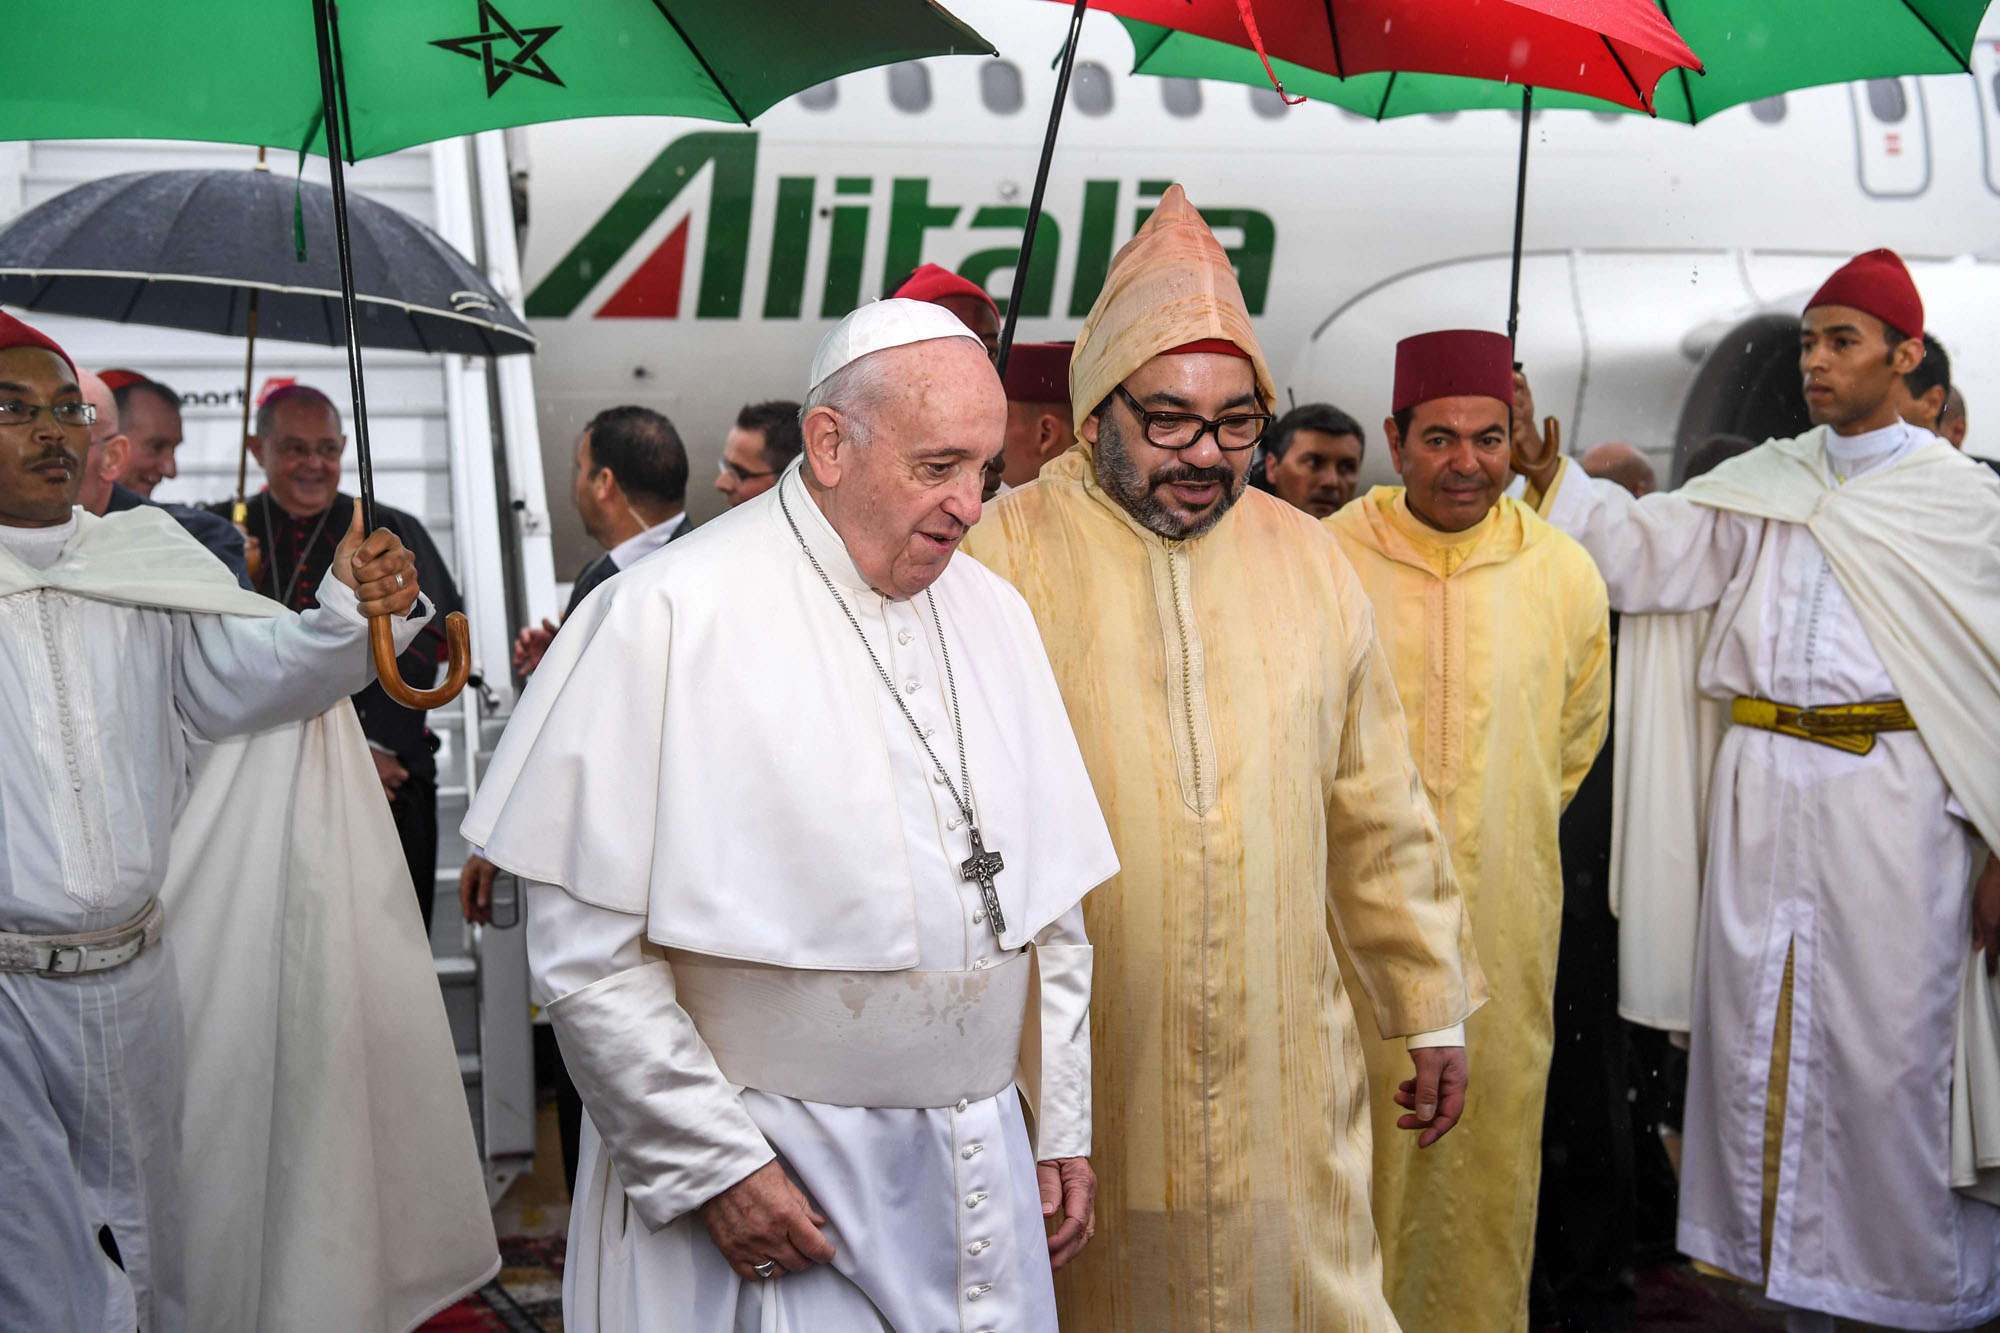 البابا في بلد الاسلام الوسطي المعتدل